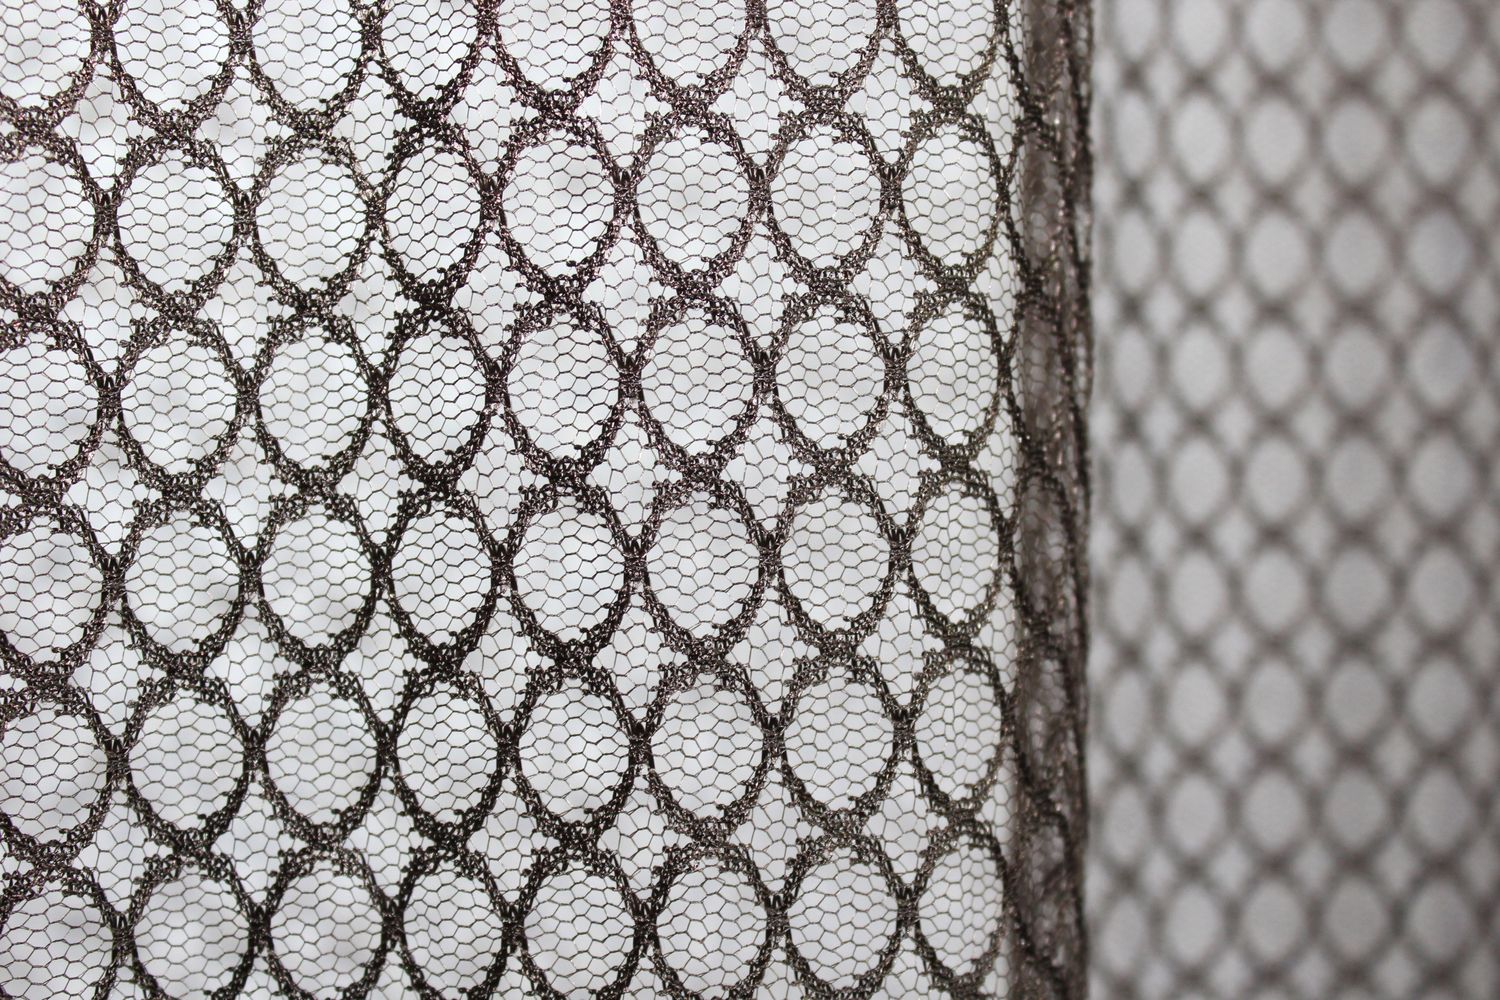 Тюль сетка, коллекция "Стелла", высотой 3м цвет венге 965т, Тюль на метраж, Нужную Вам ширину указывайте при покупке. (Ширина набирается по длине рулона.), 3 м.